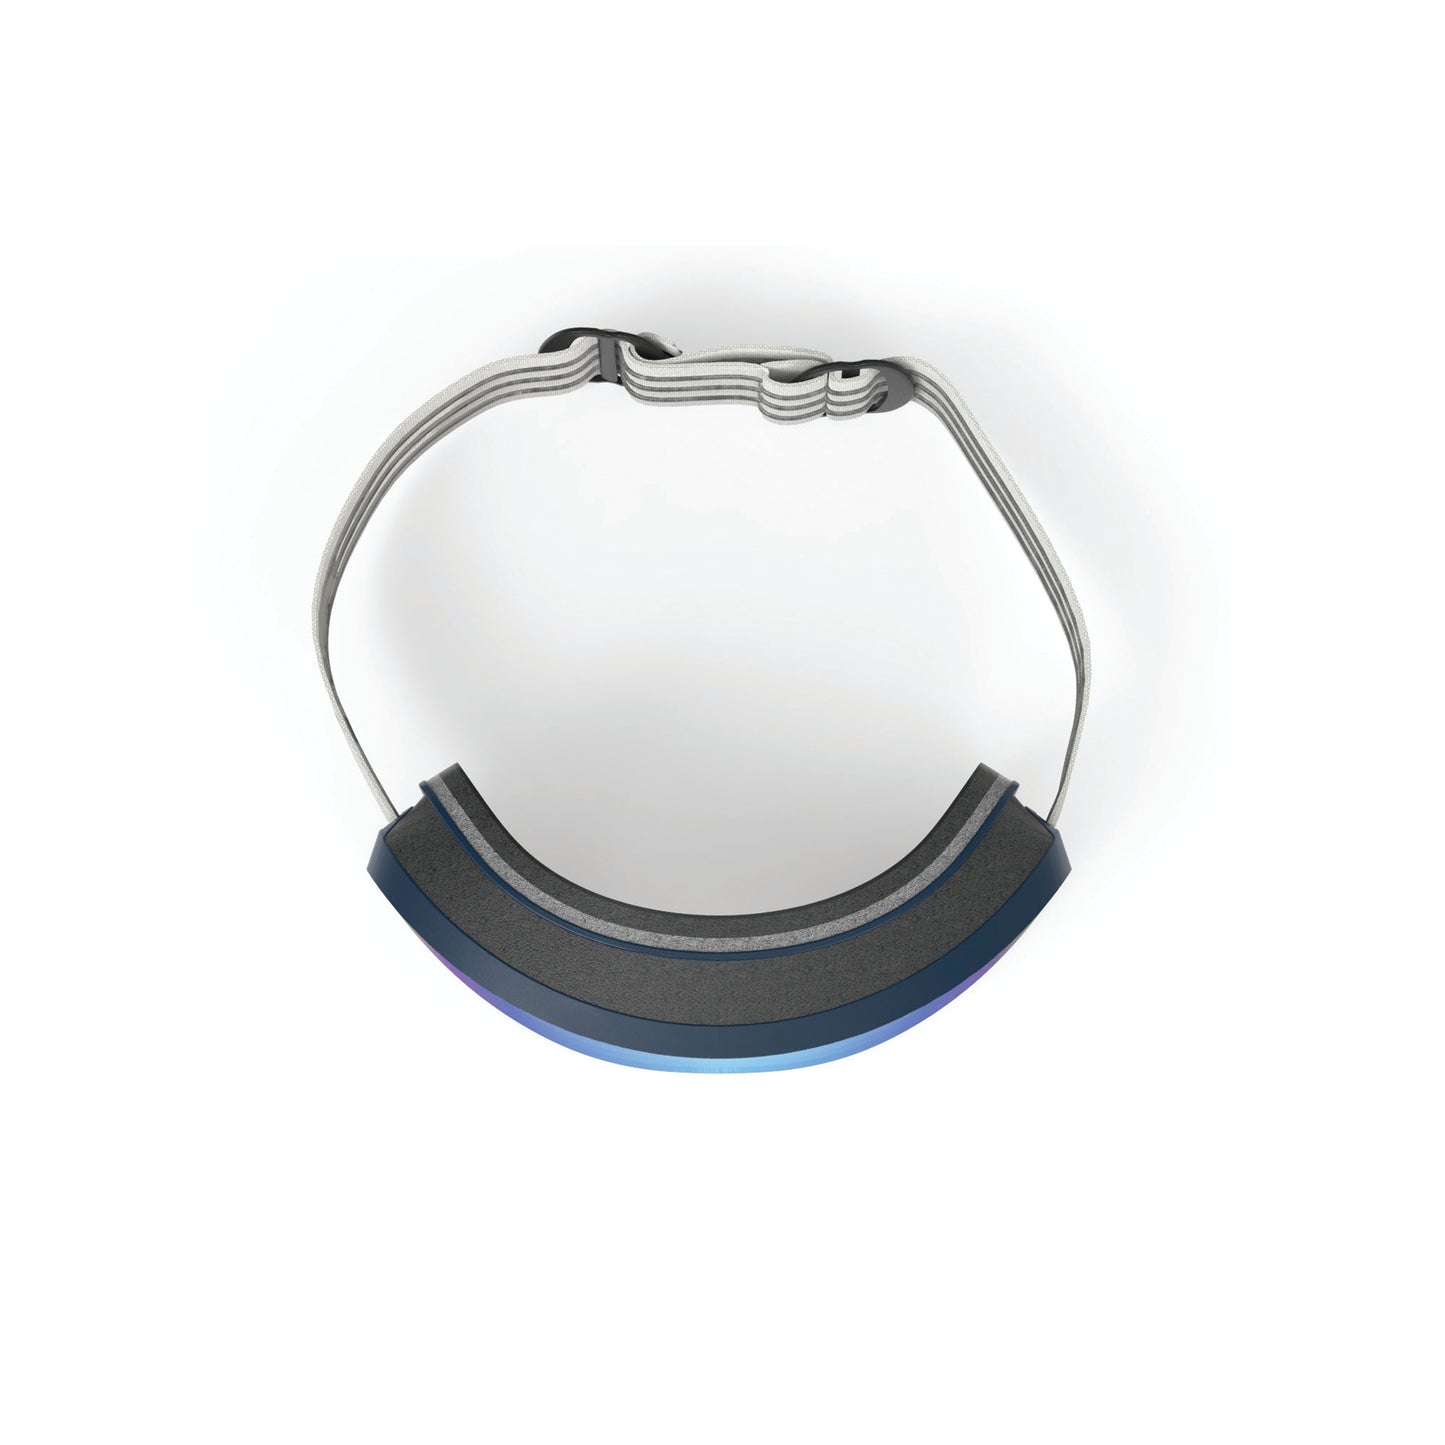 Skermo Rimless Goggle in Deep Blue Matte-Multilaser Blue Lens